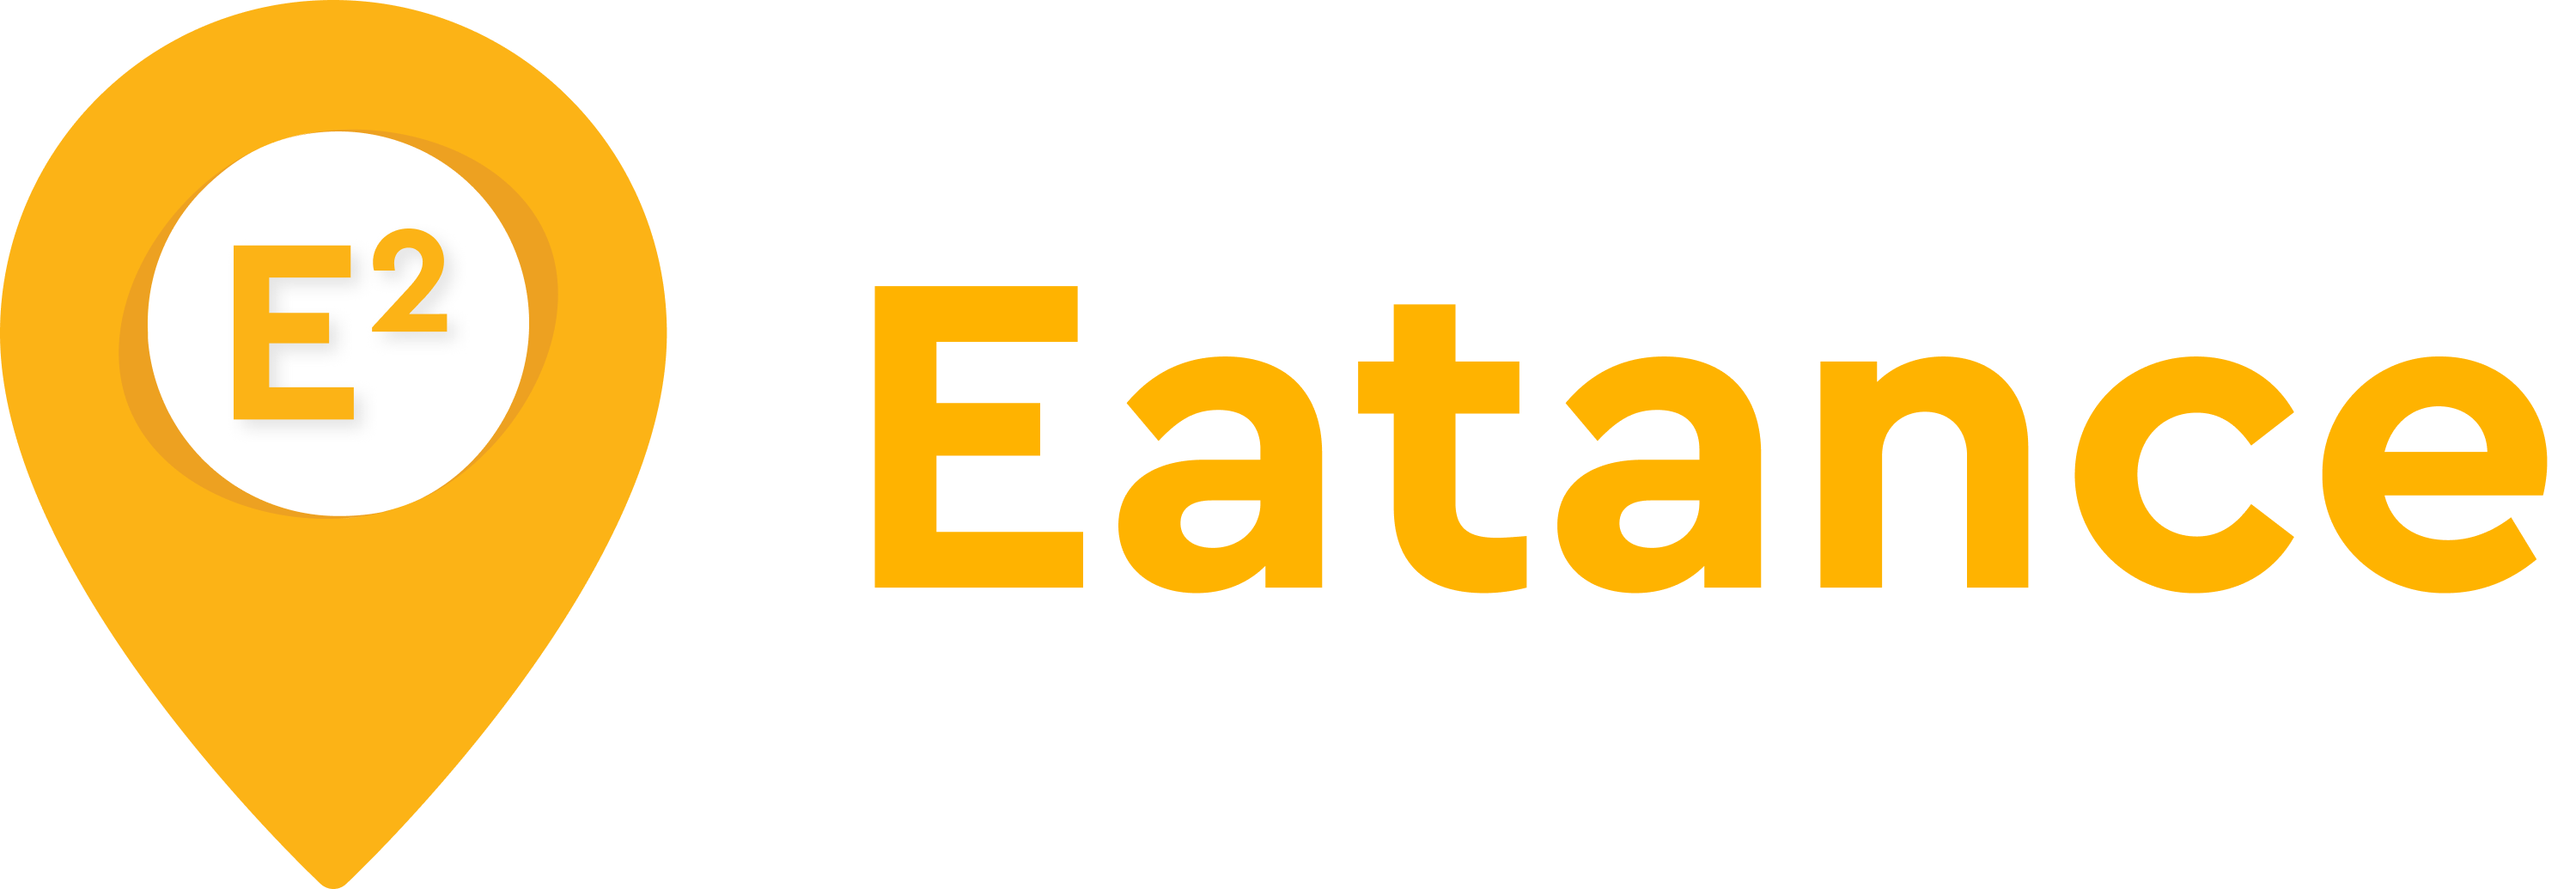 Eatance App Logo